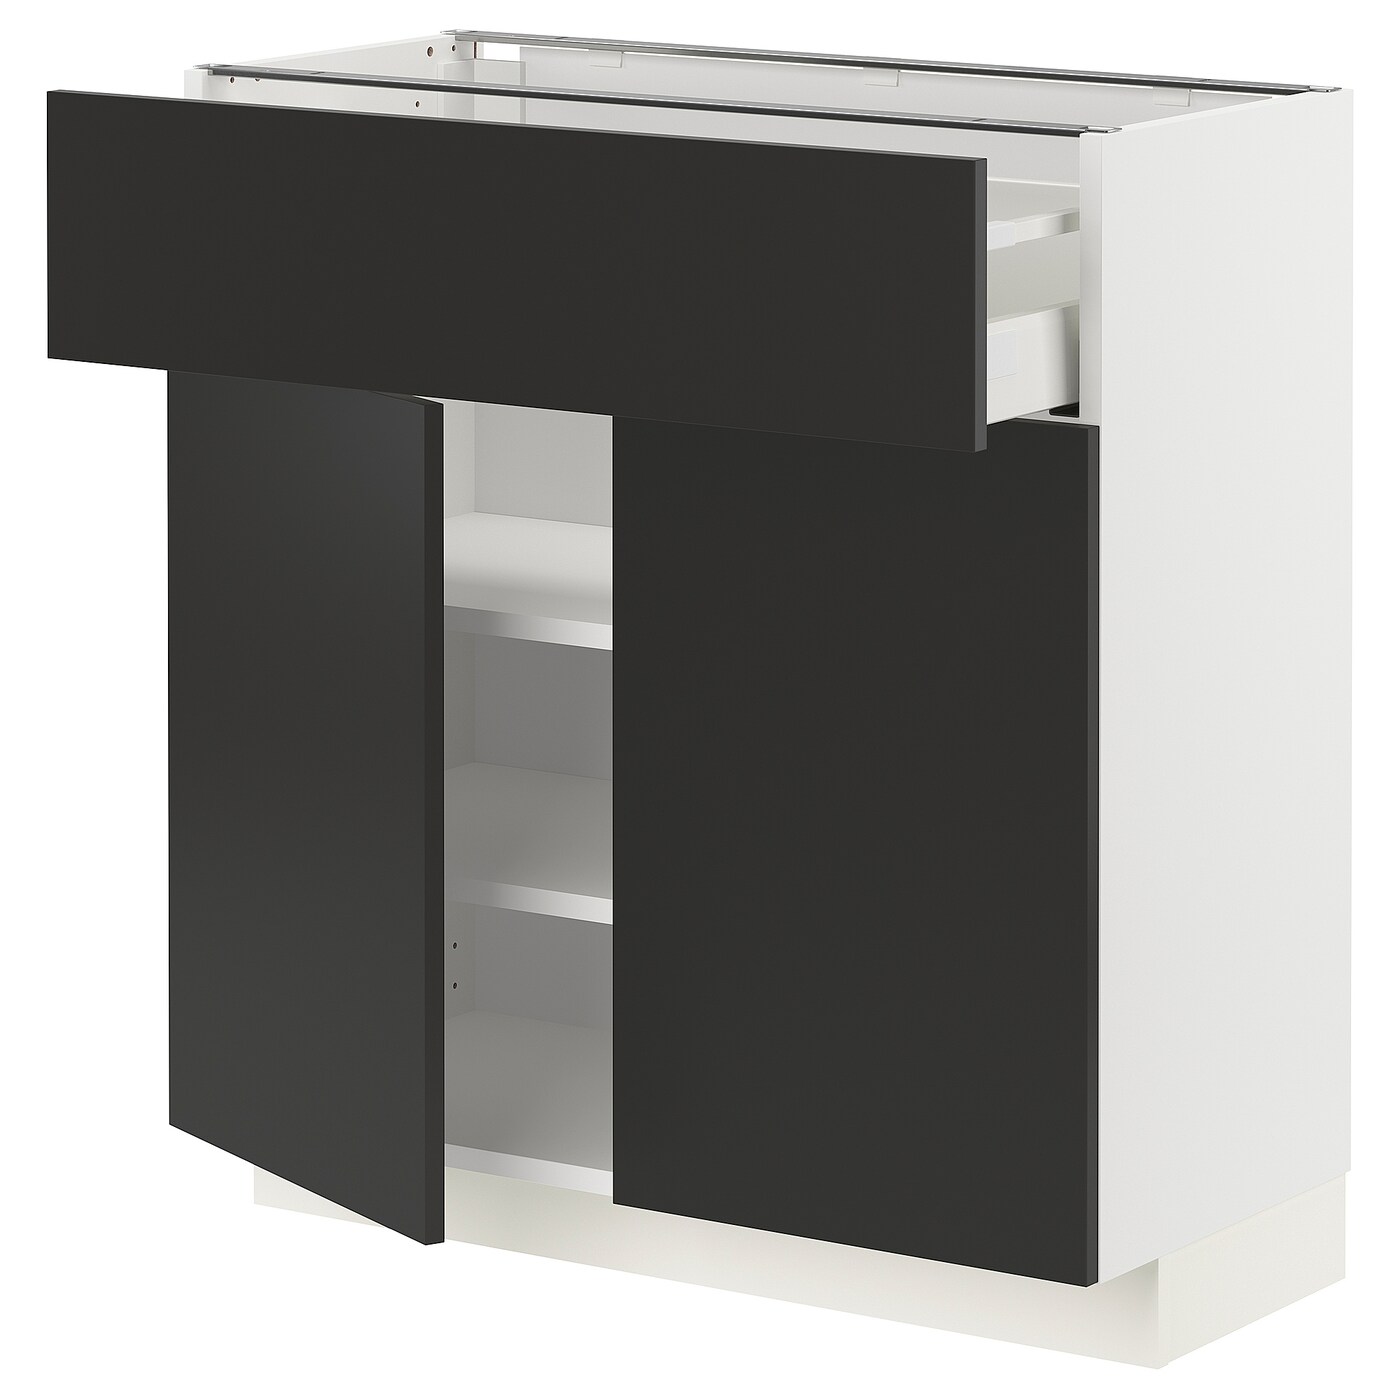 Напольный кухонный шкаф  - IKEA METOD MAXIMERA, 80x37x80см, белый/черный, МЕТОД МАКСИМЕРА ИКЕА